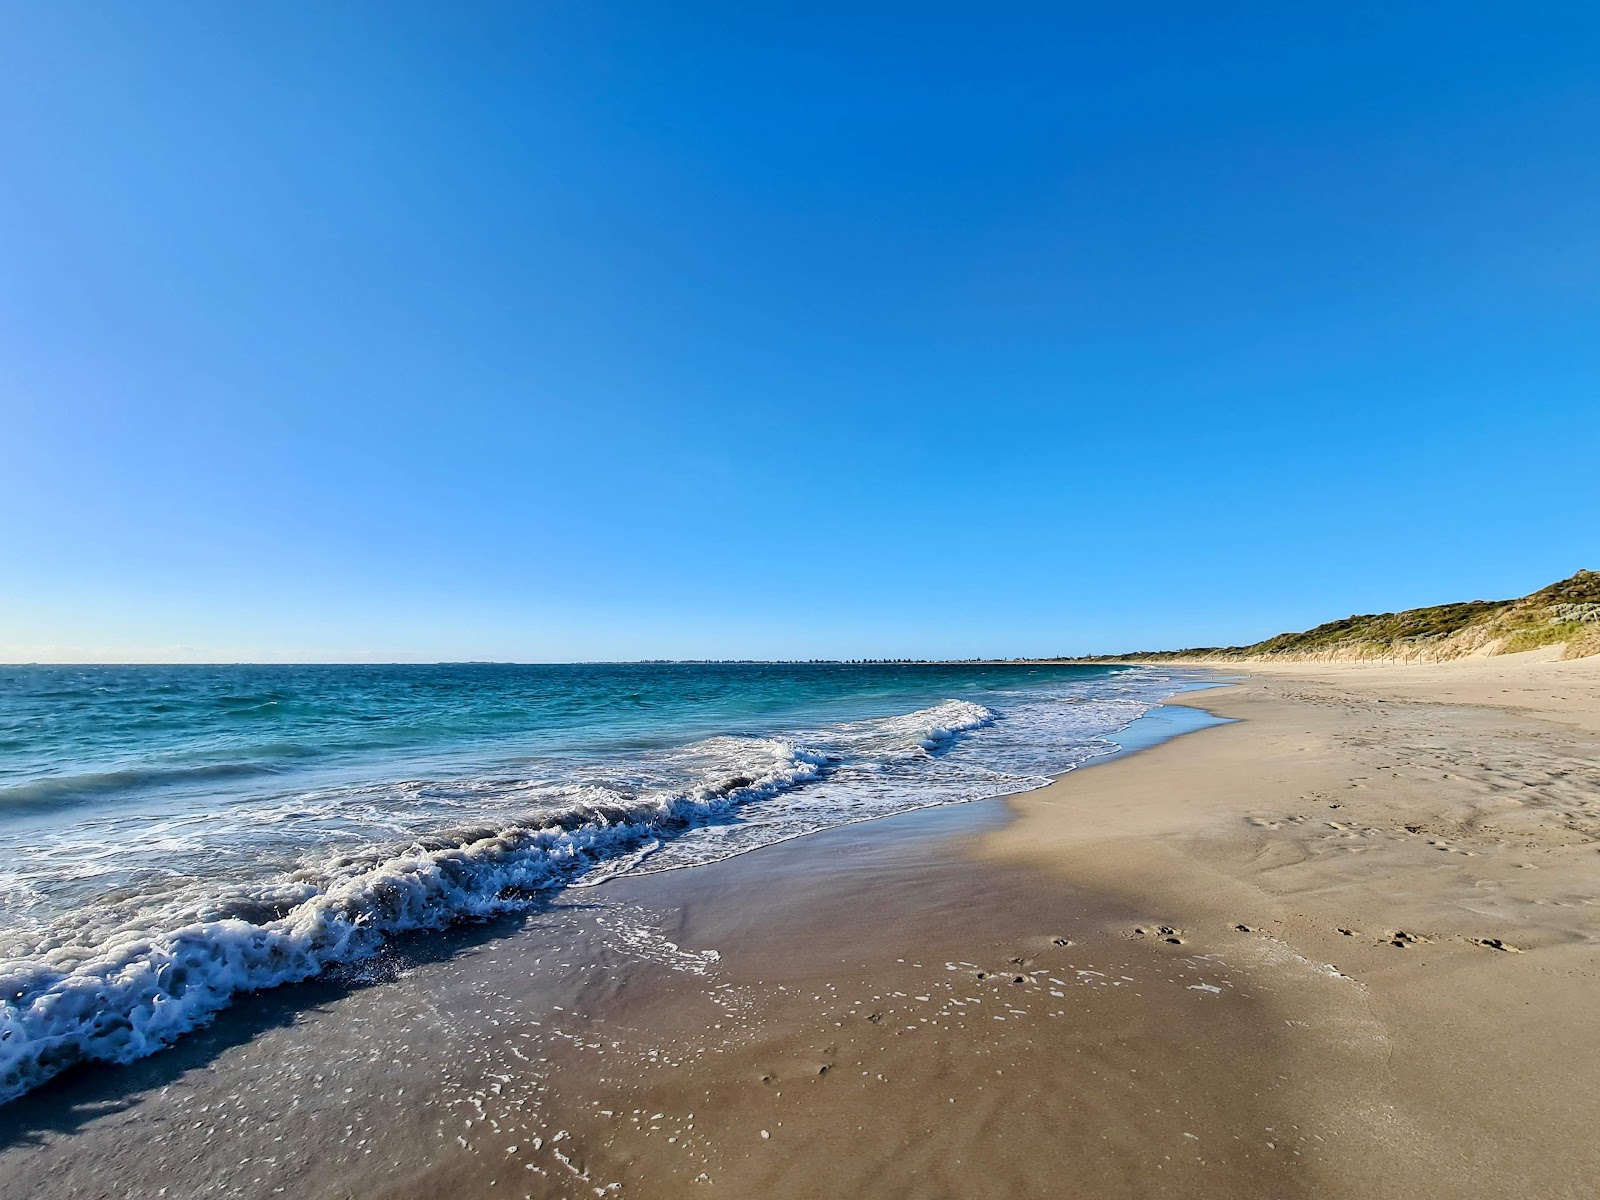 Zdjęcie Port Kennedy Nudist Beach z powierzchnią jasny piasek